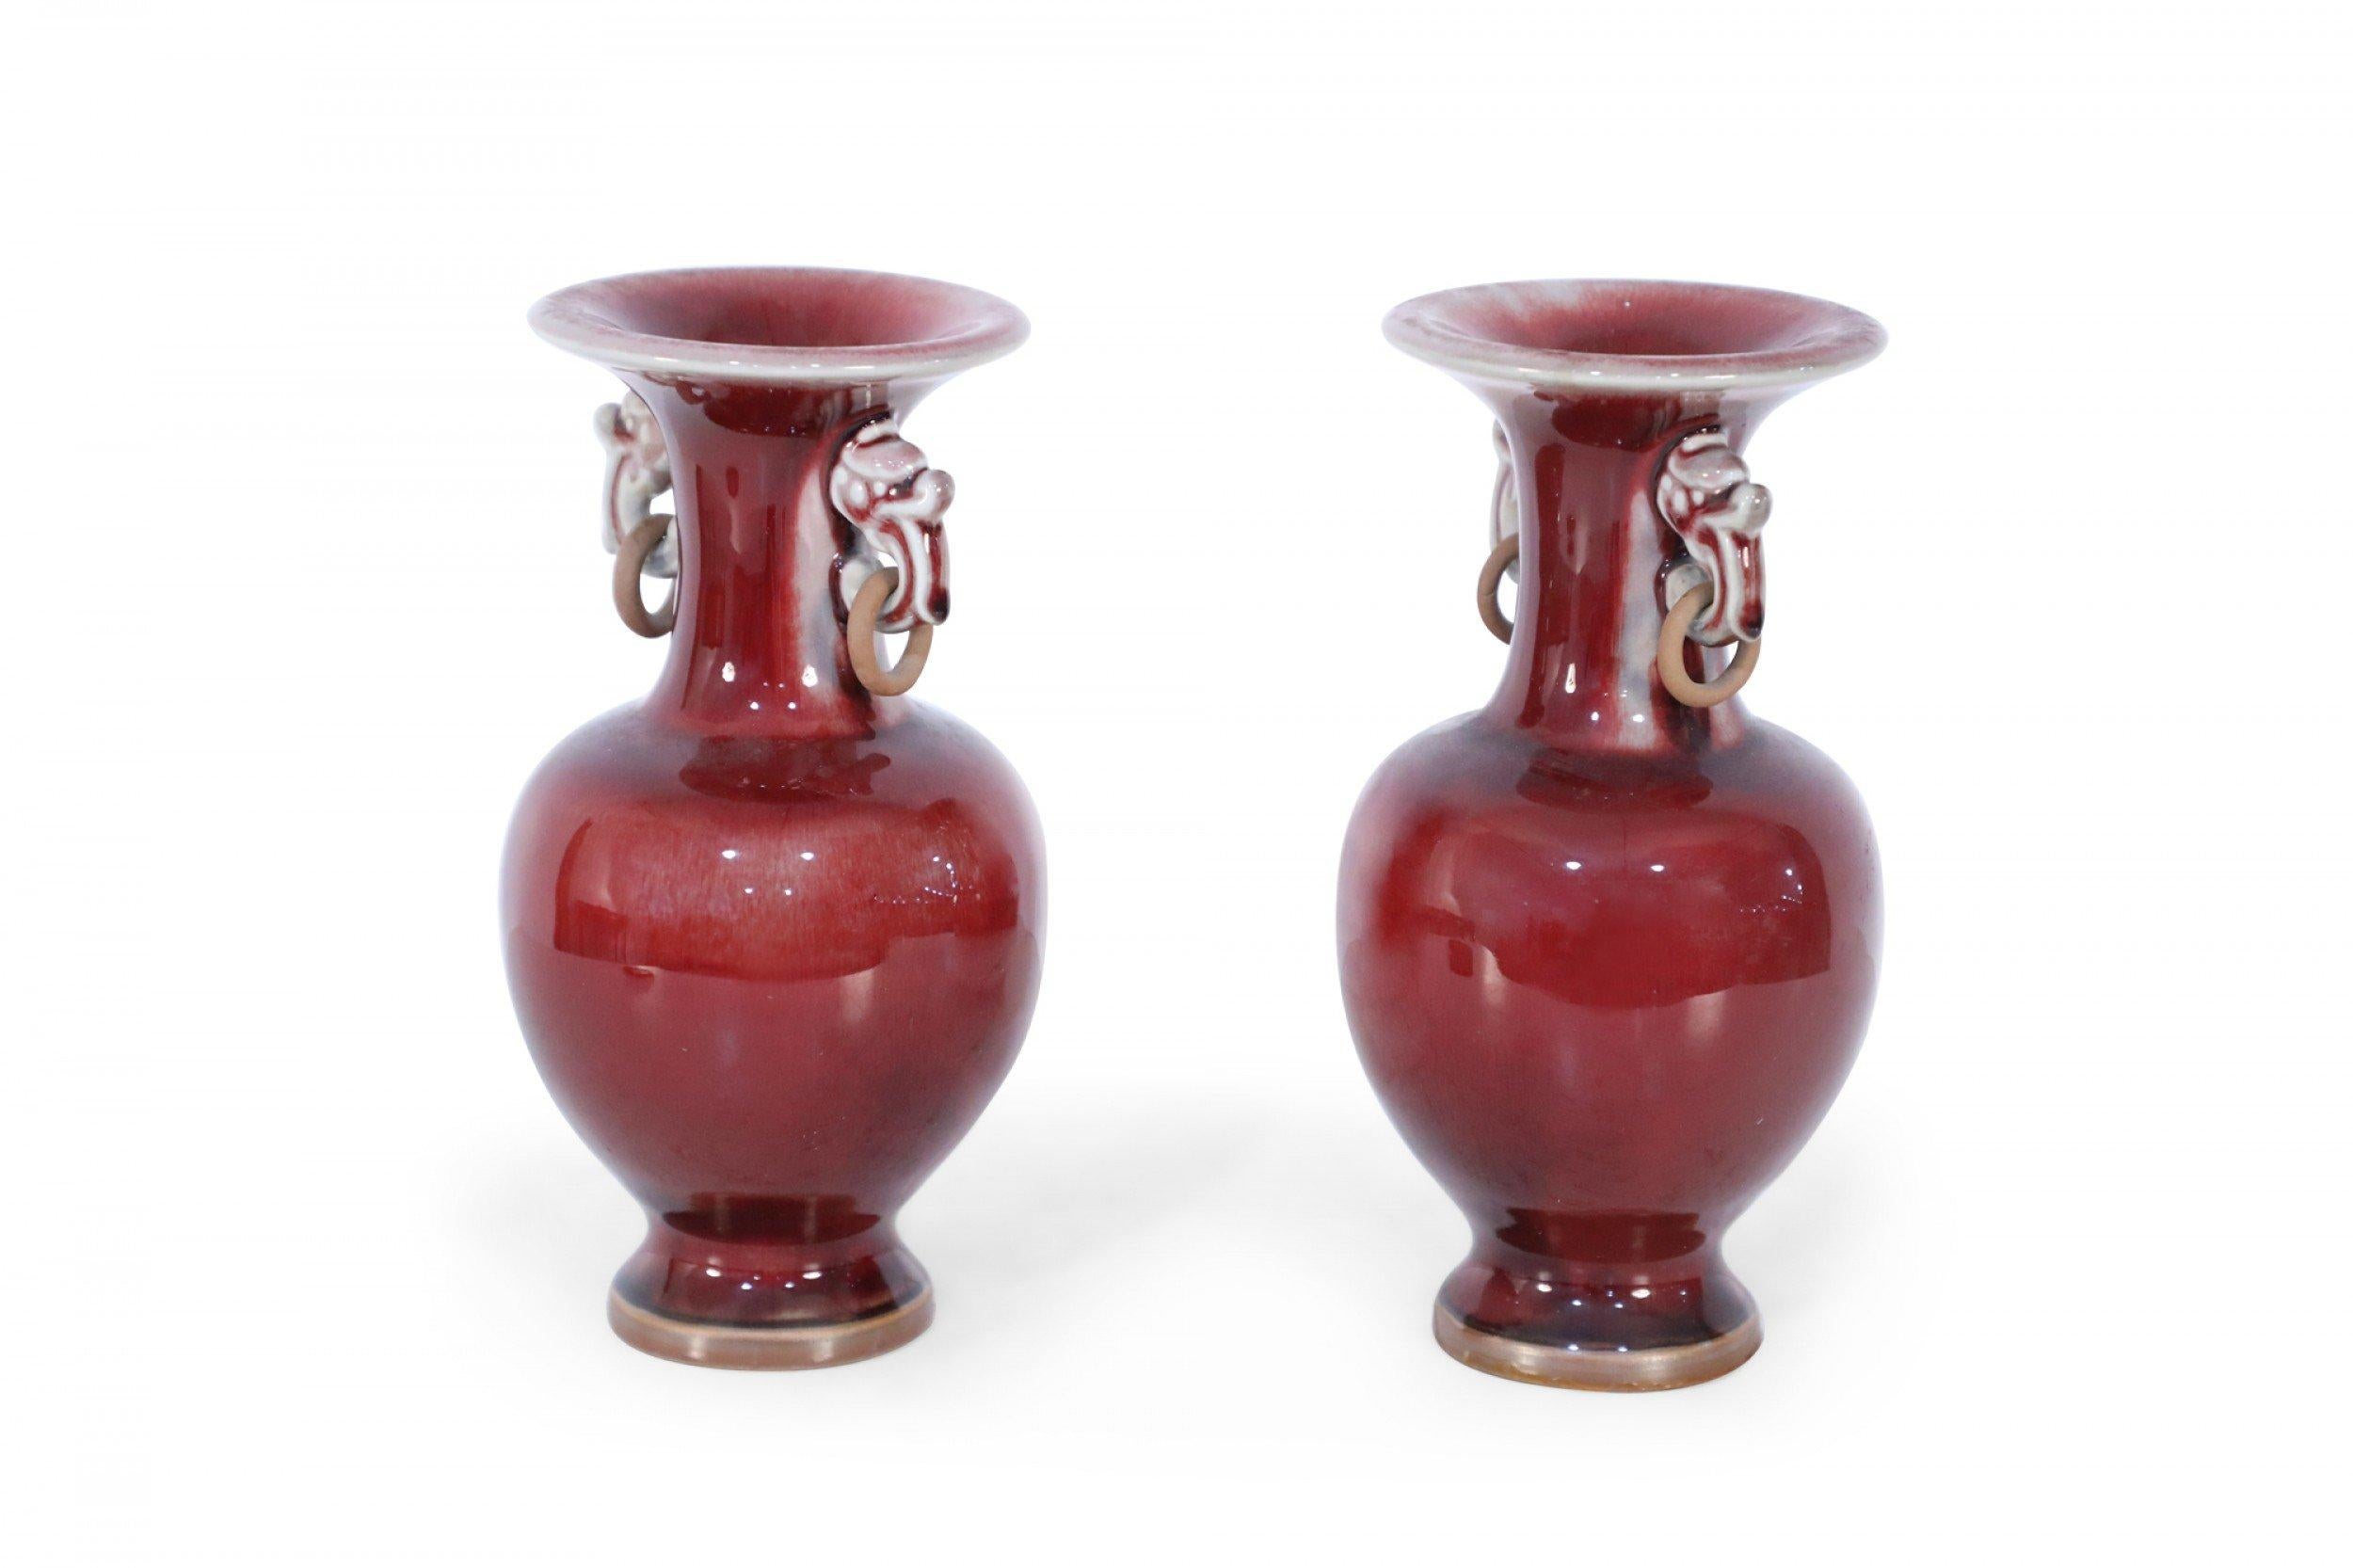 Paire de vases chinois rouge sang de bœuf à col cannelé, accentué par des oreilles figuratives tenant des anneaux en bois, menant à des moitiés inférieures bulbeuses, au sommet d'un petit pied rond (prix de la paire).
      